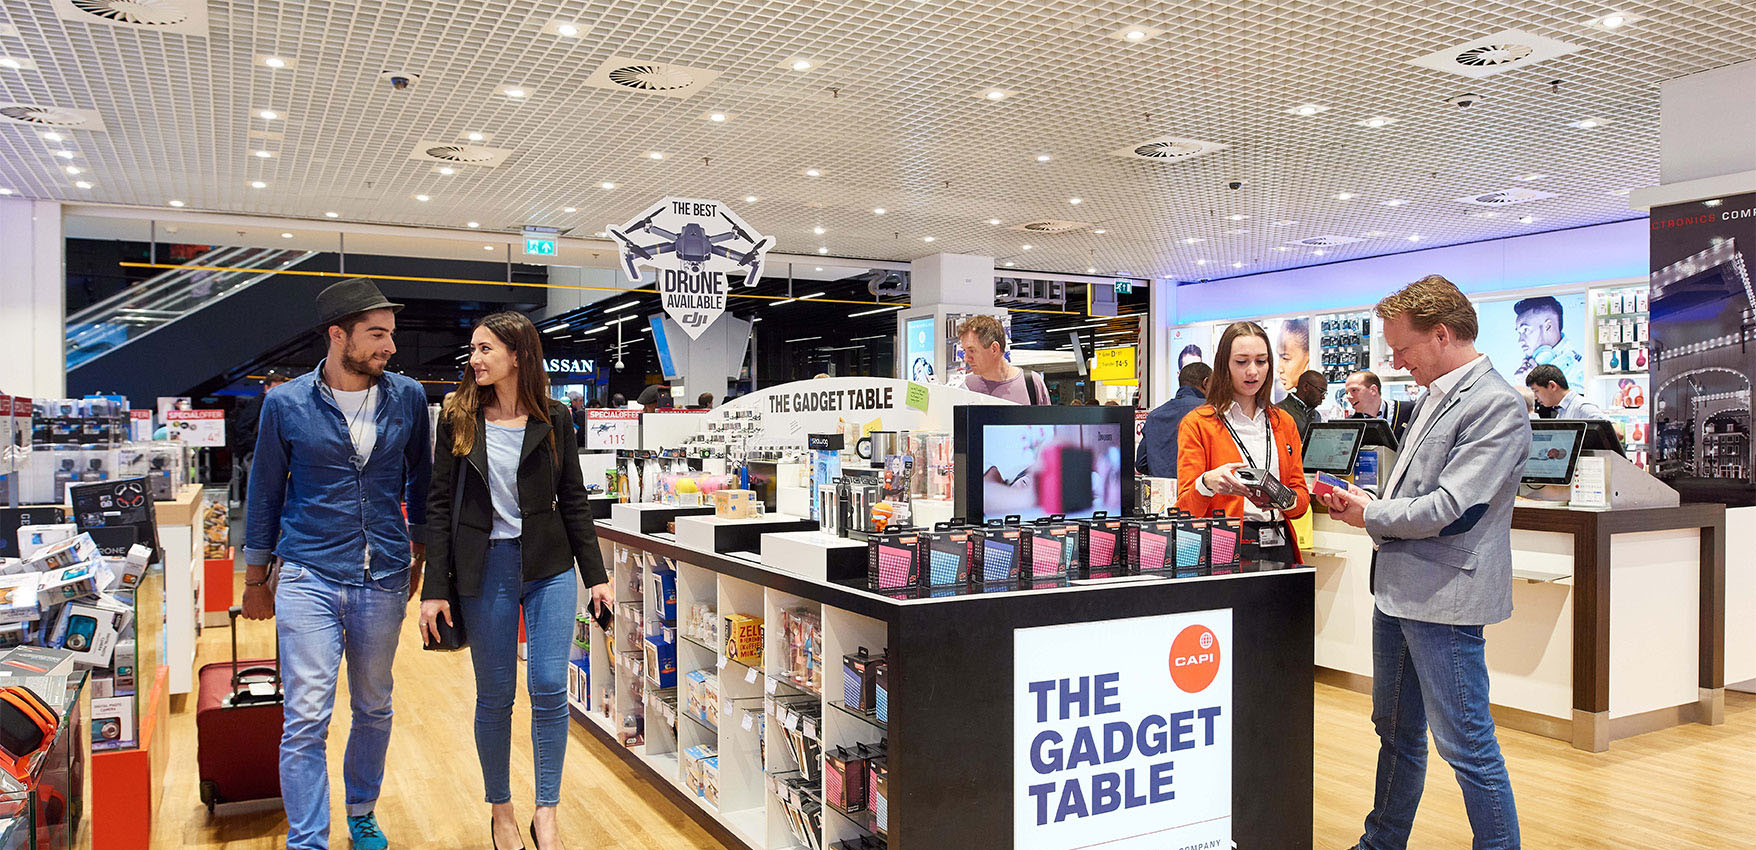 Bisschop vredig talent Capi-Lux | Leading airport retailer in electronics